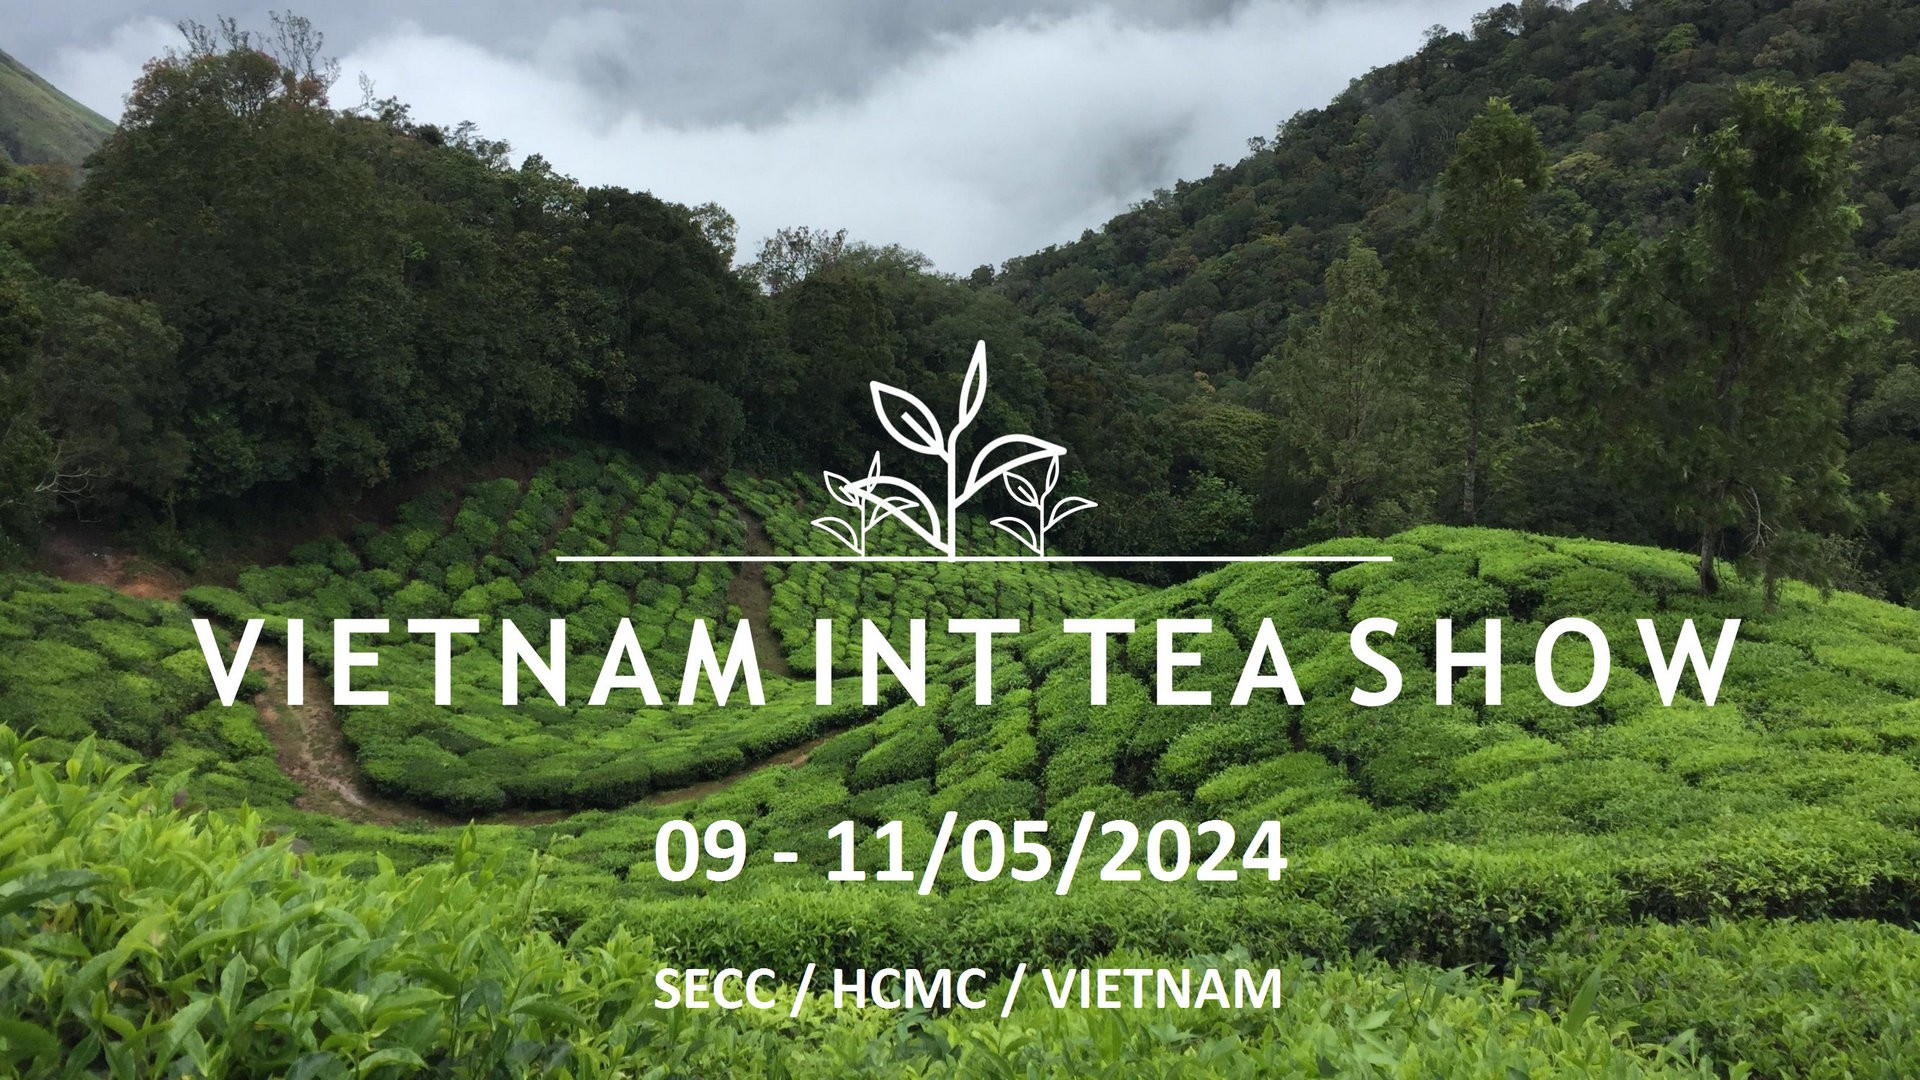 Vietnam Int'l Tea Show 2024 - Thi công gian hàng Vietnam Int'l Tea Show